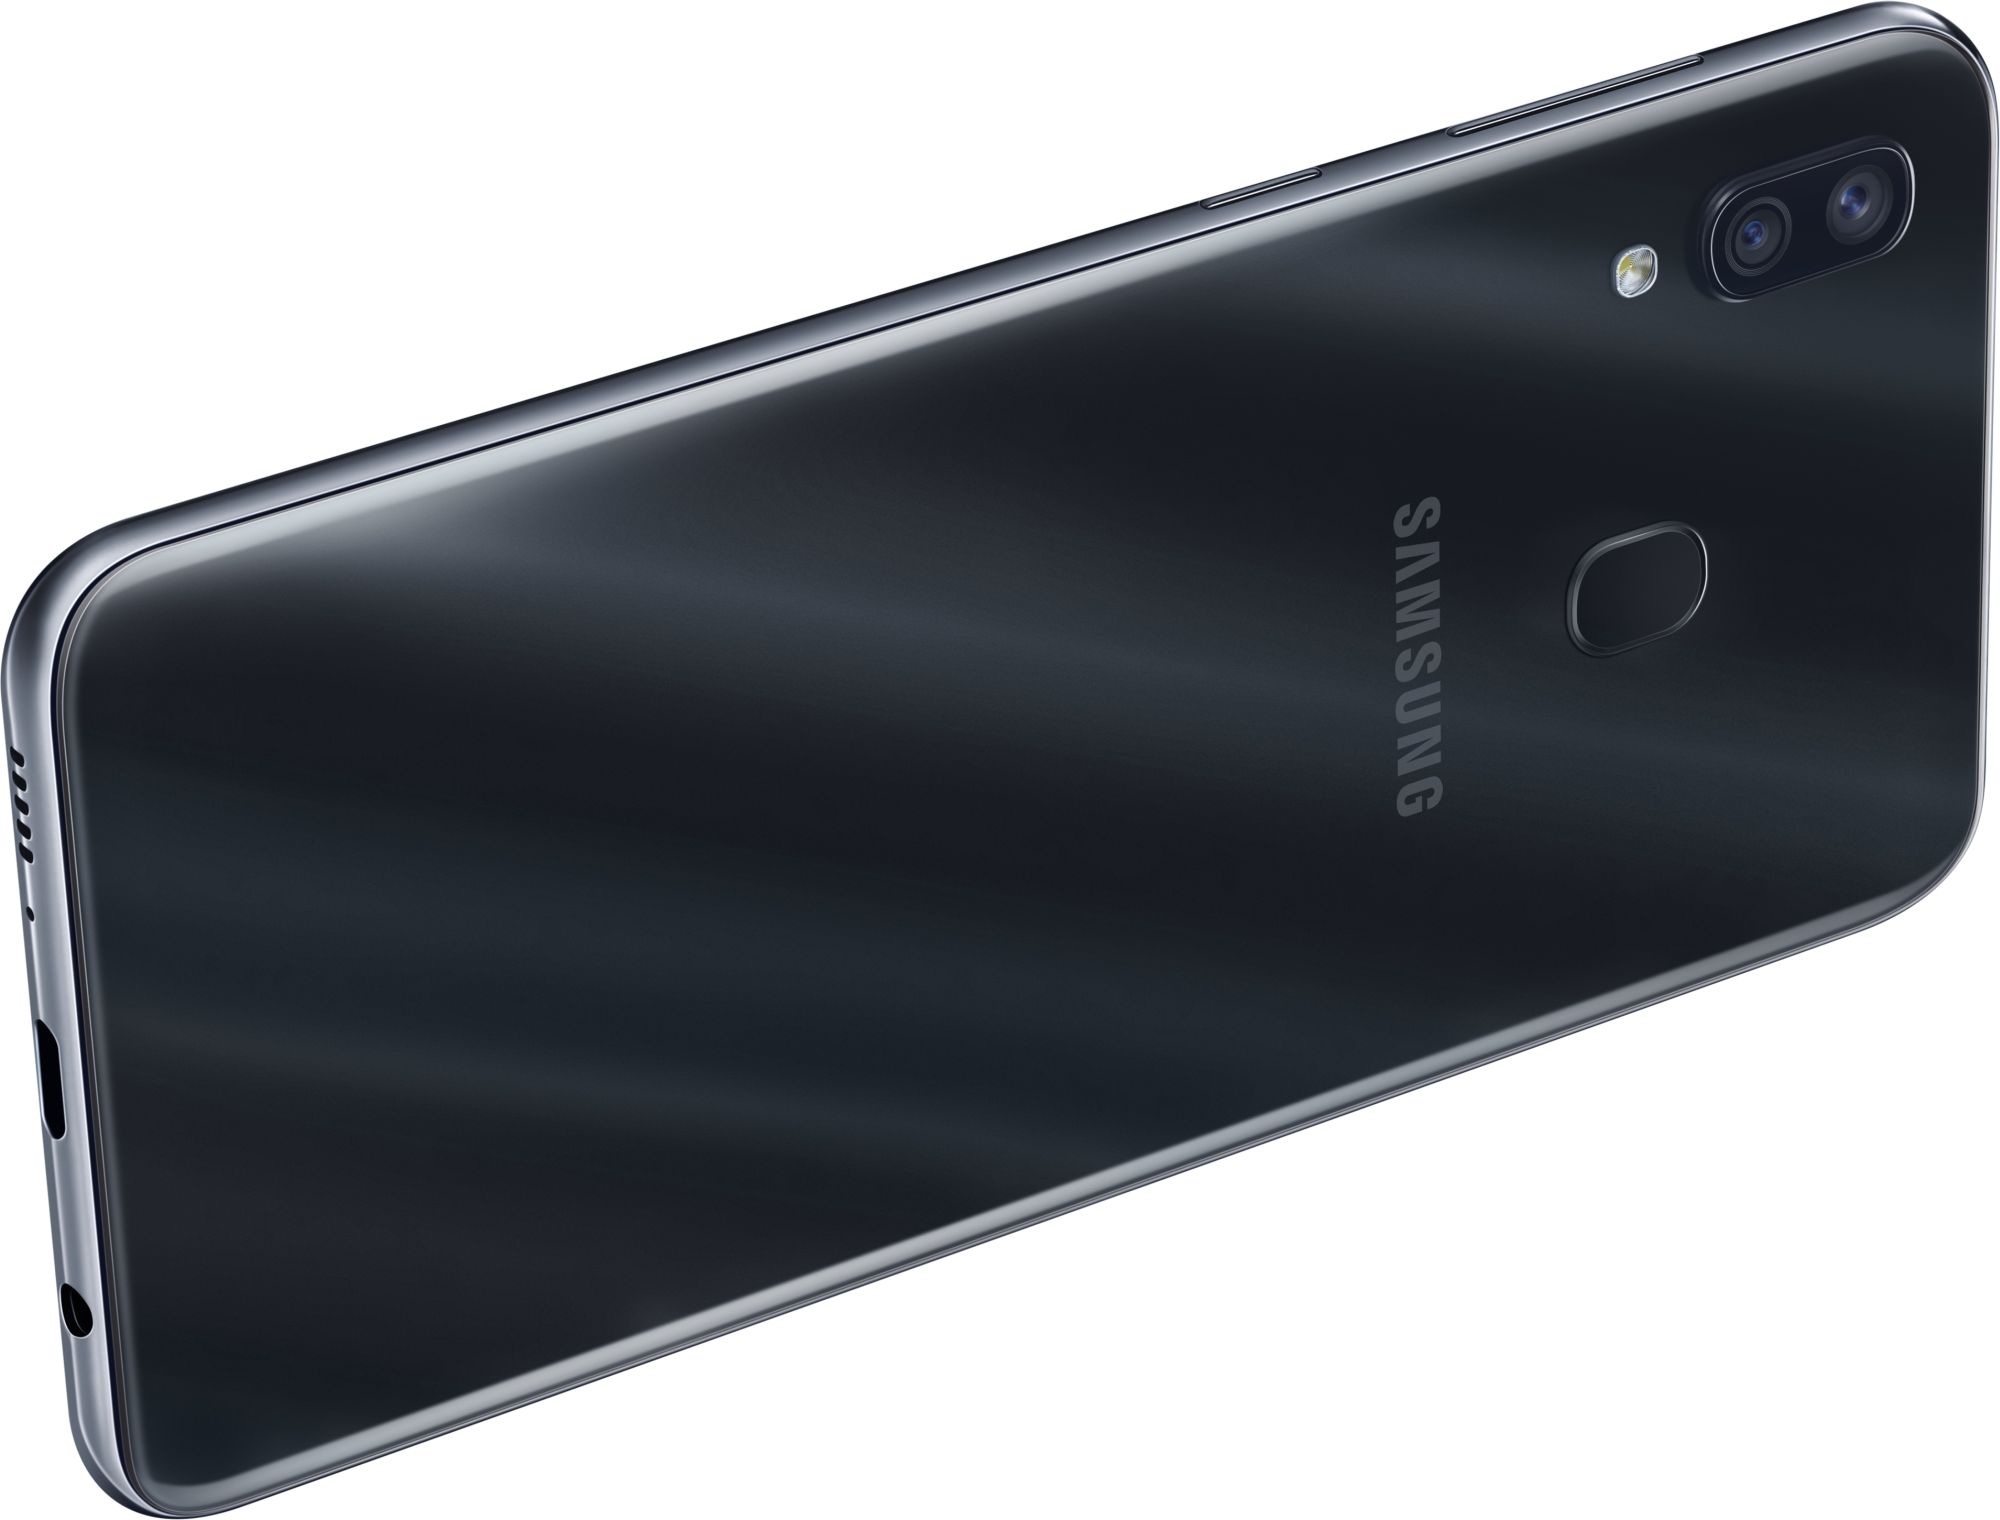 Samsung Galaxy A30 32GB Black